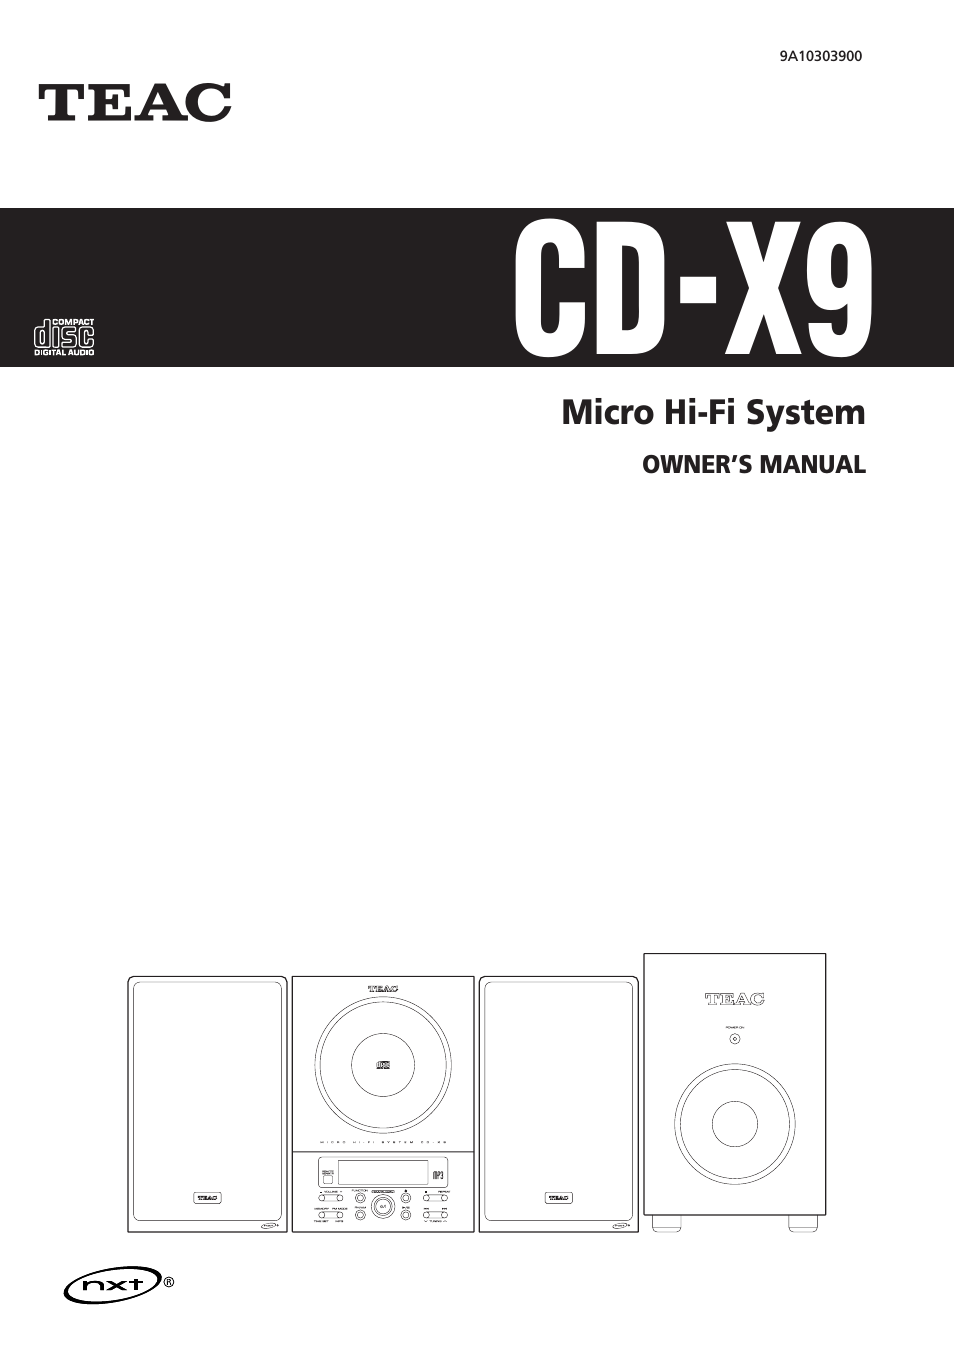 CD-X9